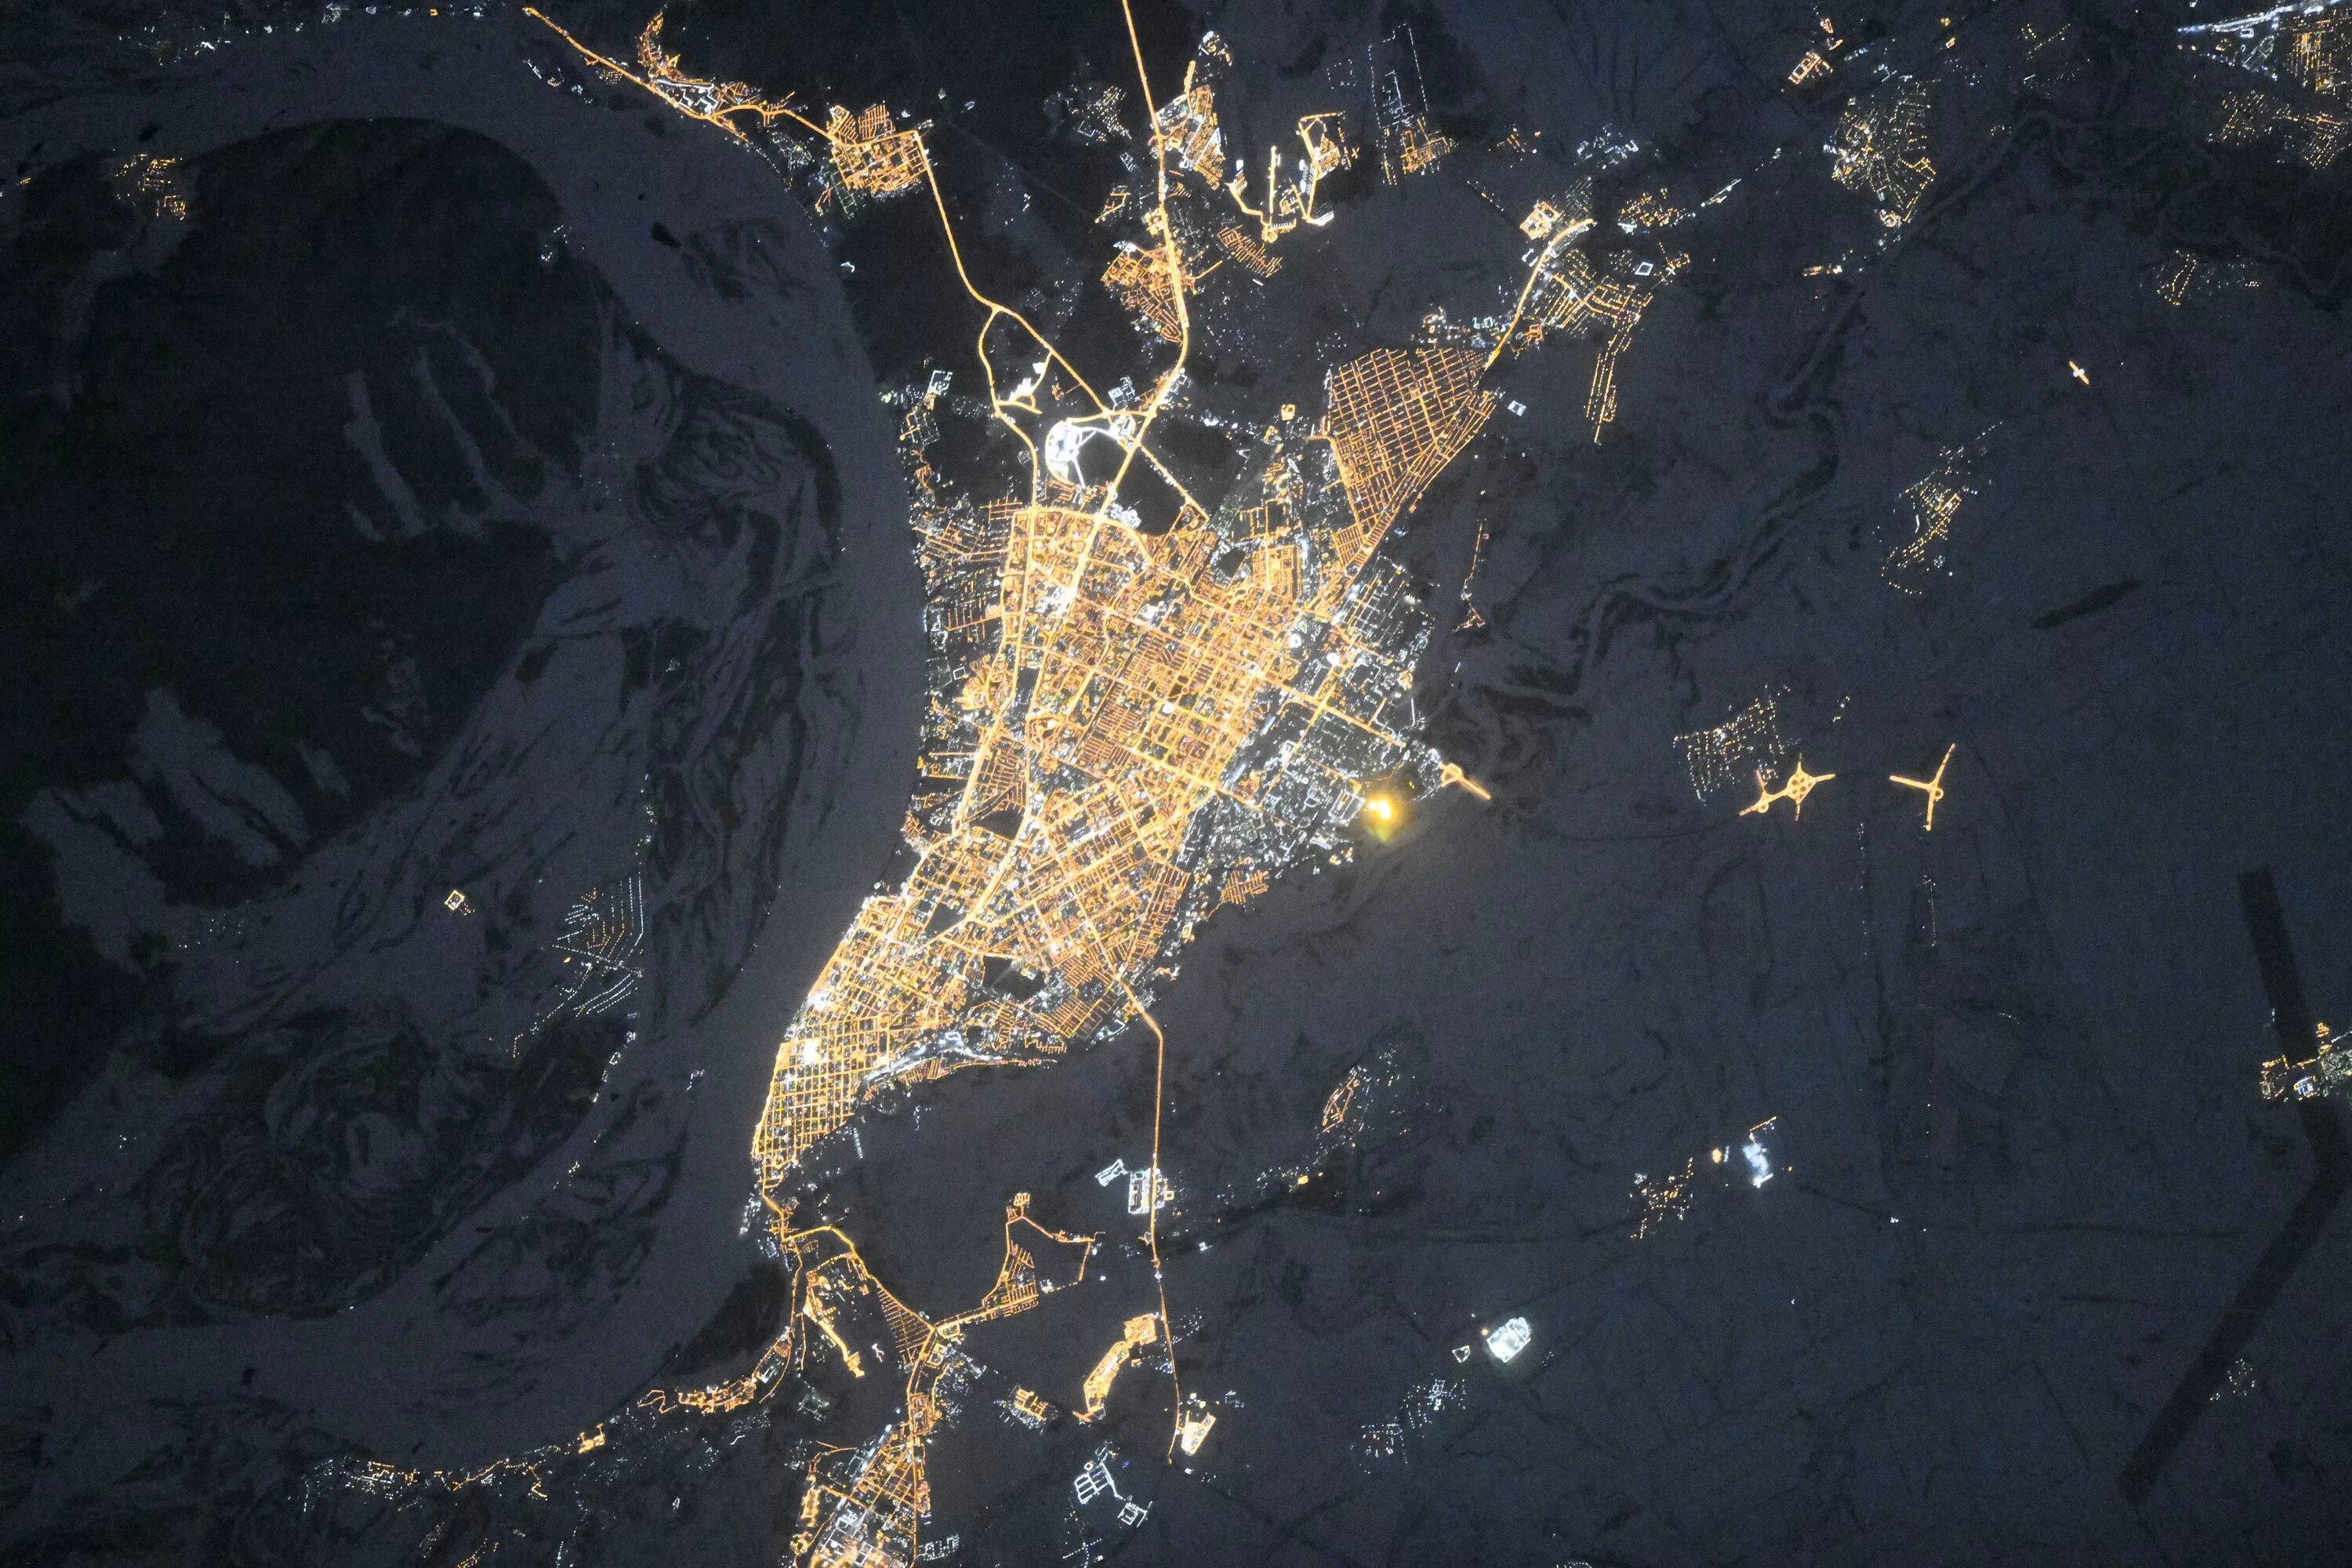 Снимок Самары из космоса. Ночной снимок из космоса город Самара. Космические снимки. Город в космосе. Реальное изображение со спутника